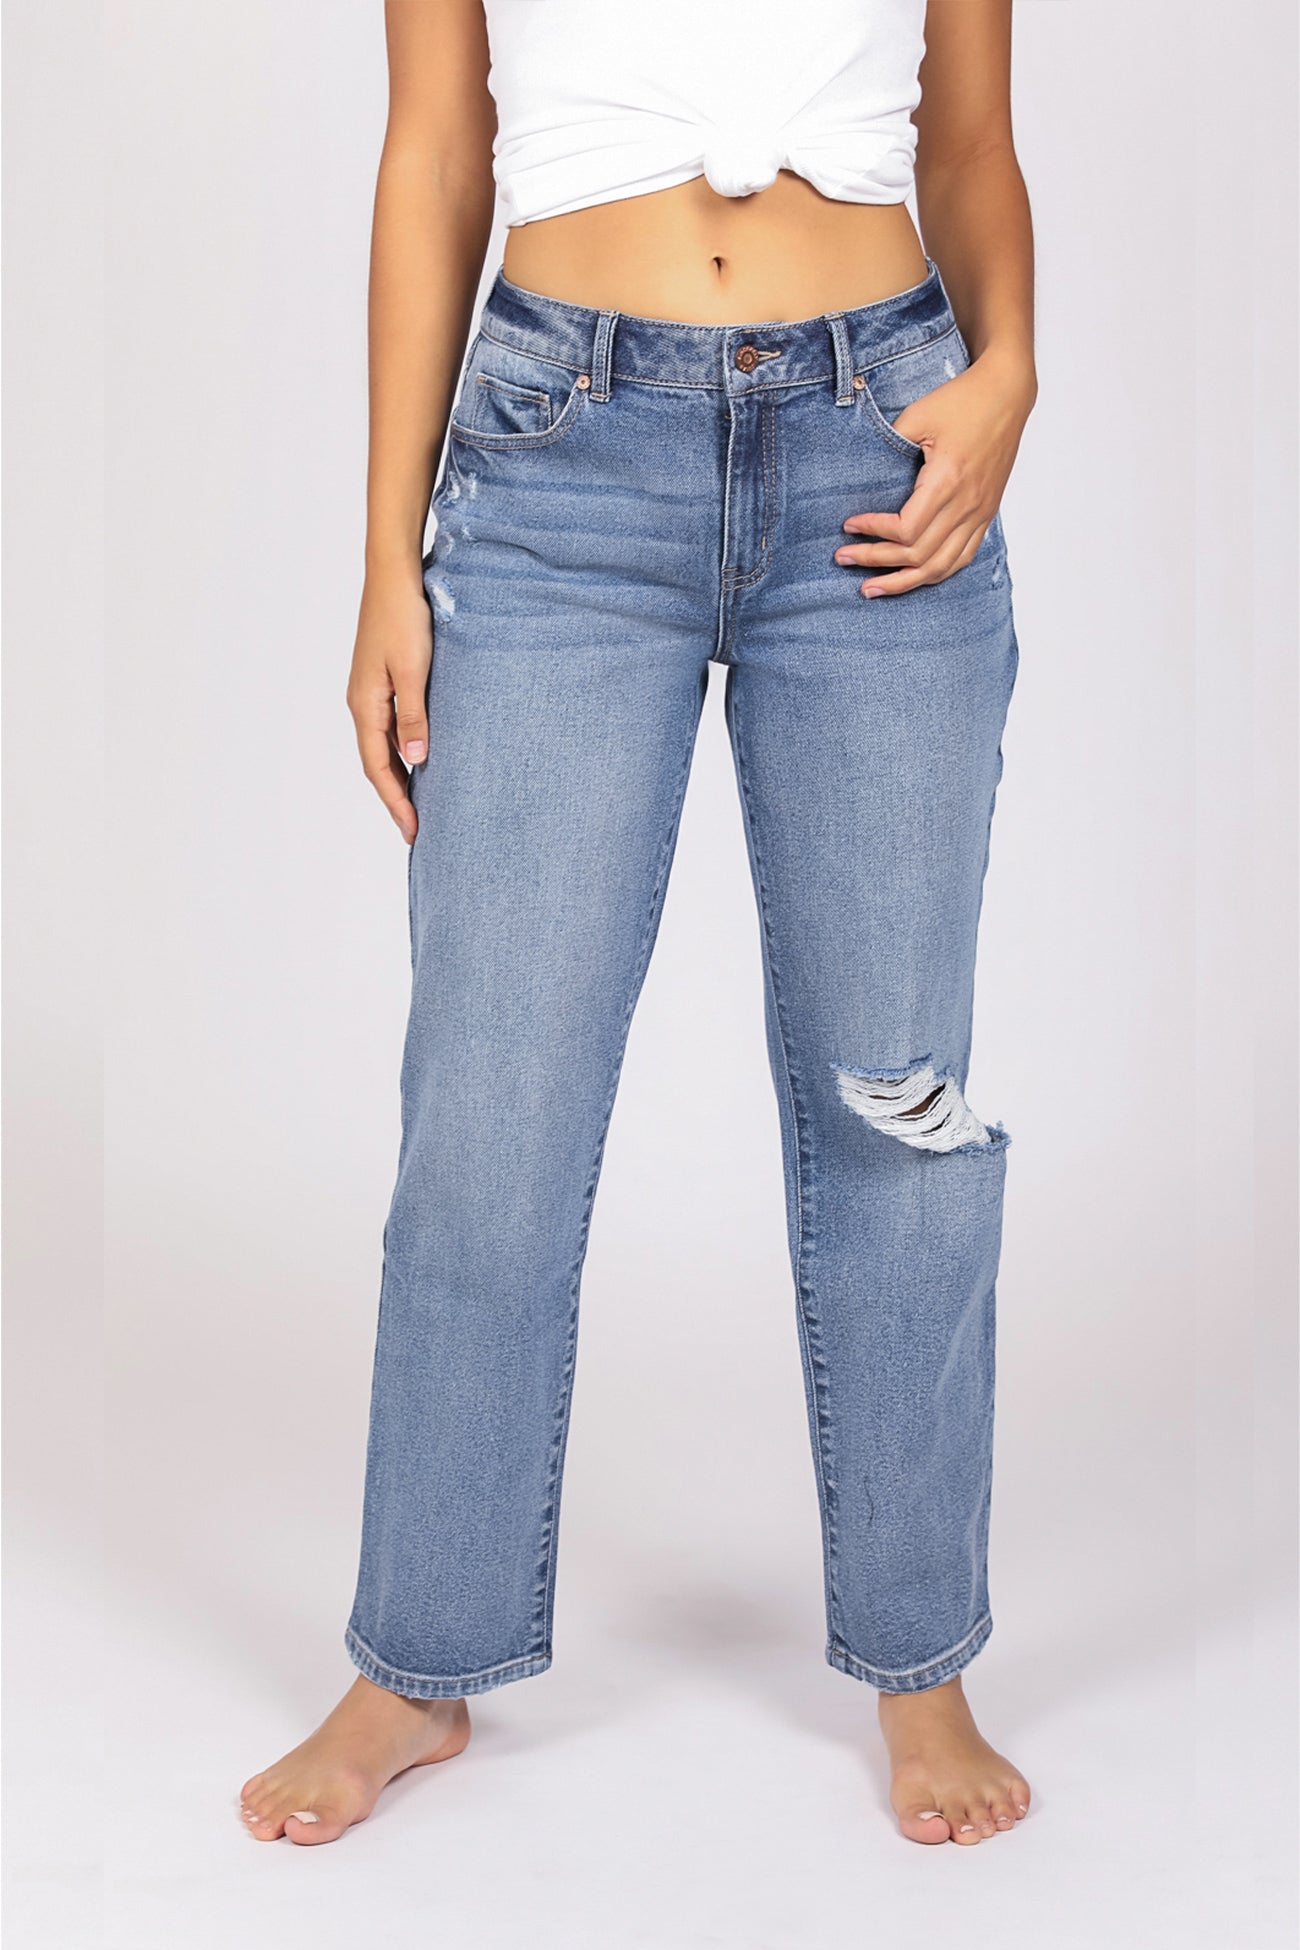 Shop Women's 90's Jeans